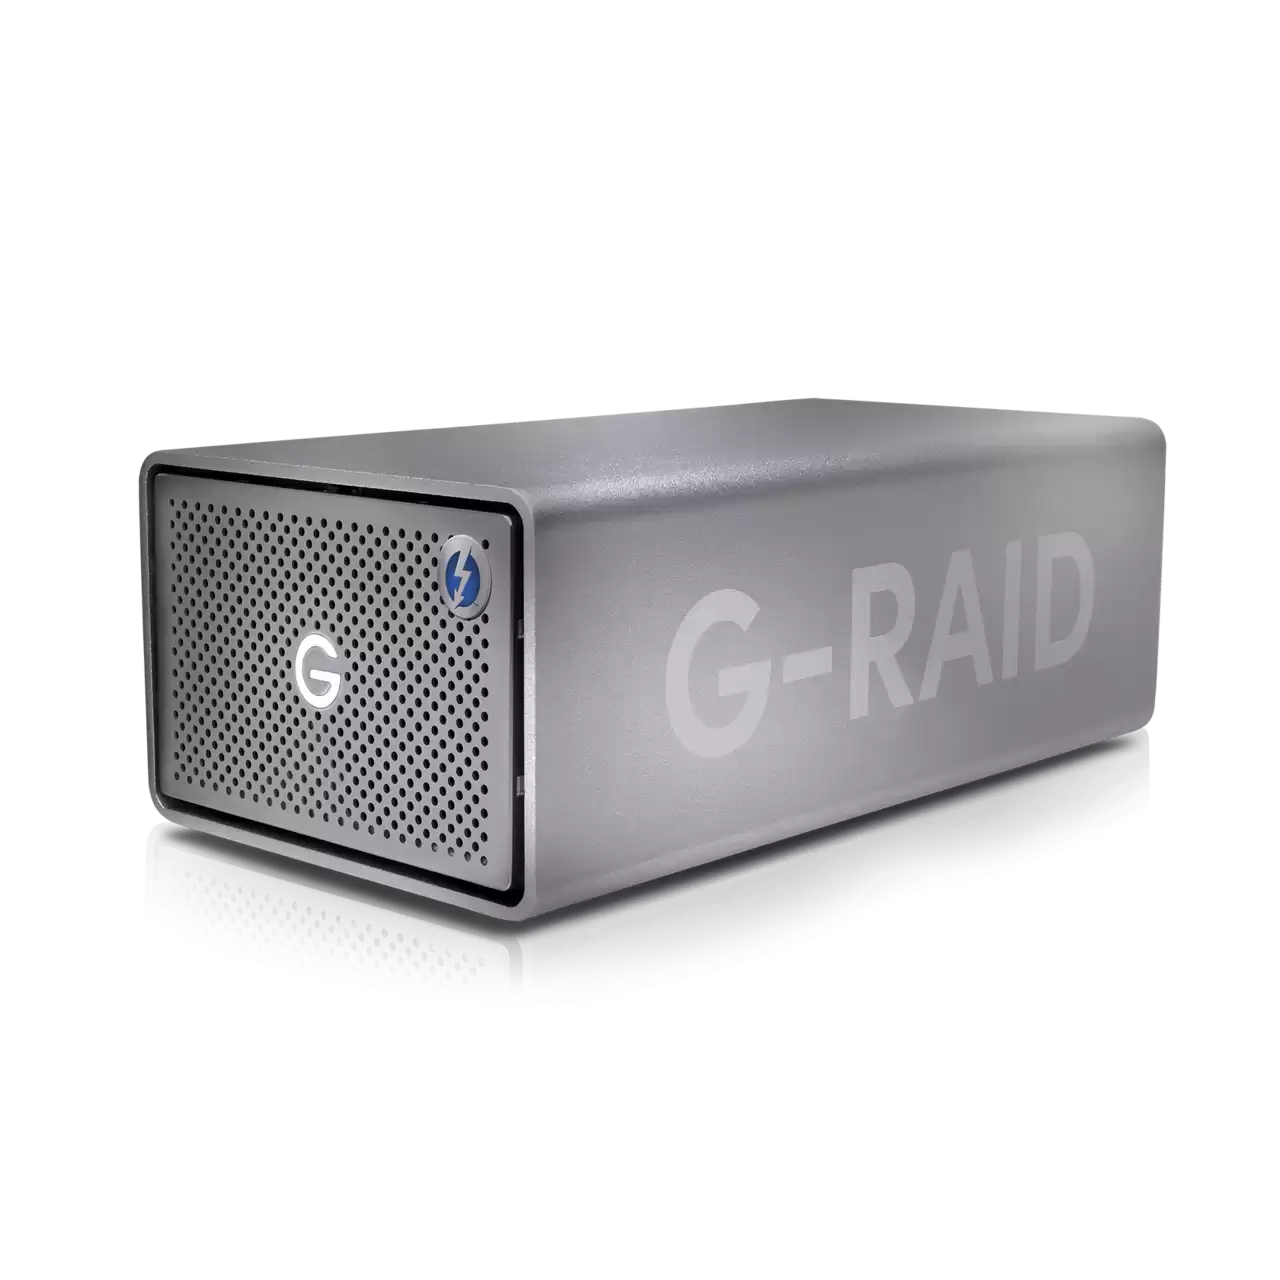 G-RAID SHUTTLE 8 96TB